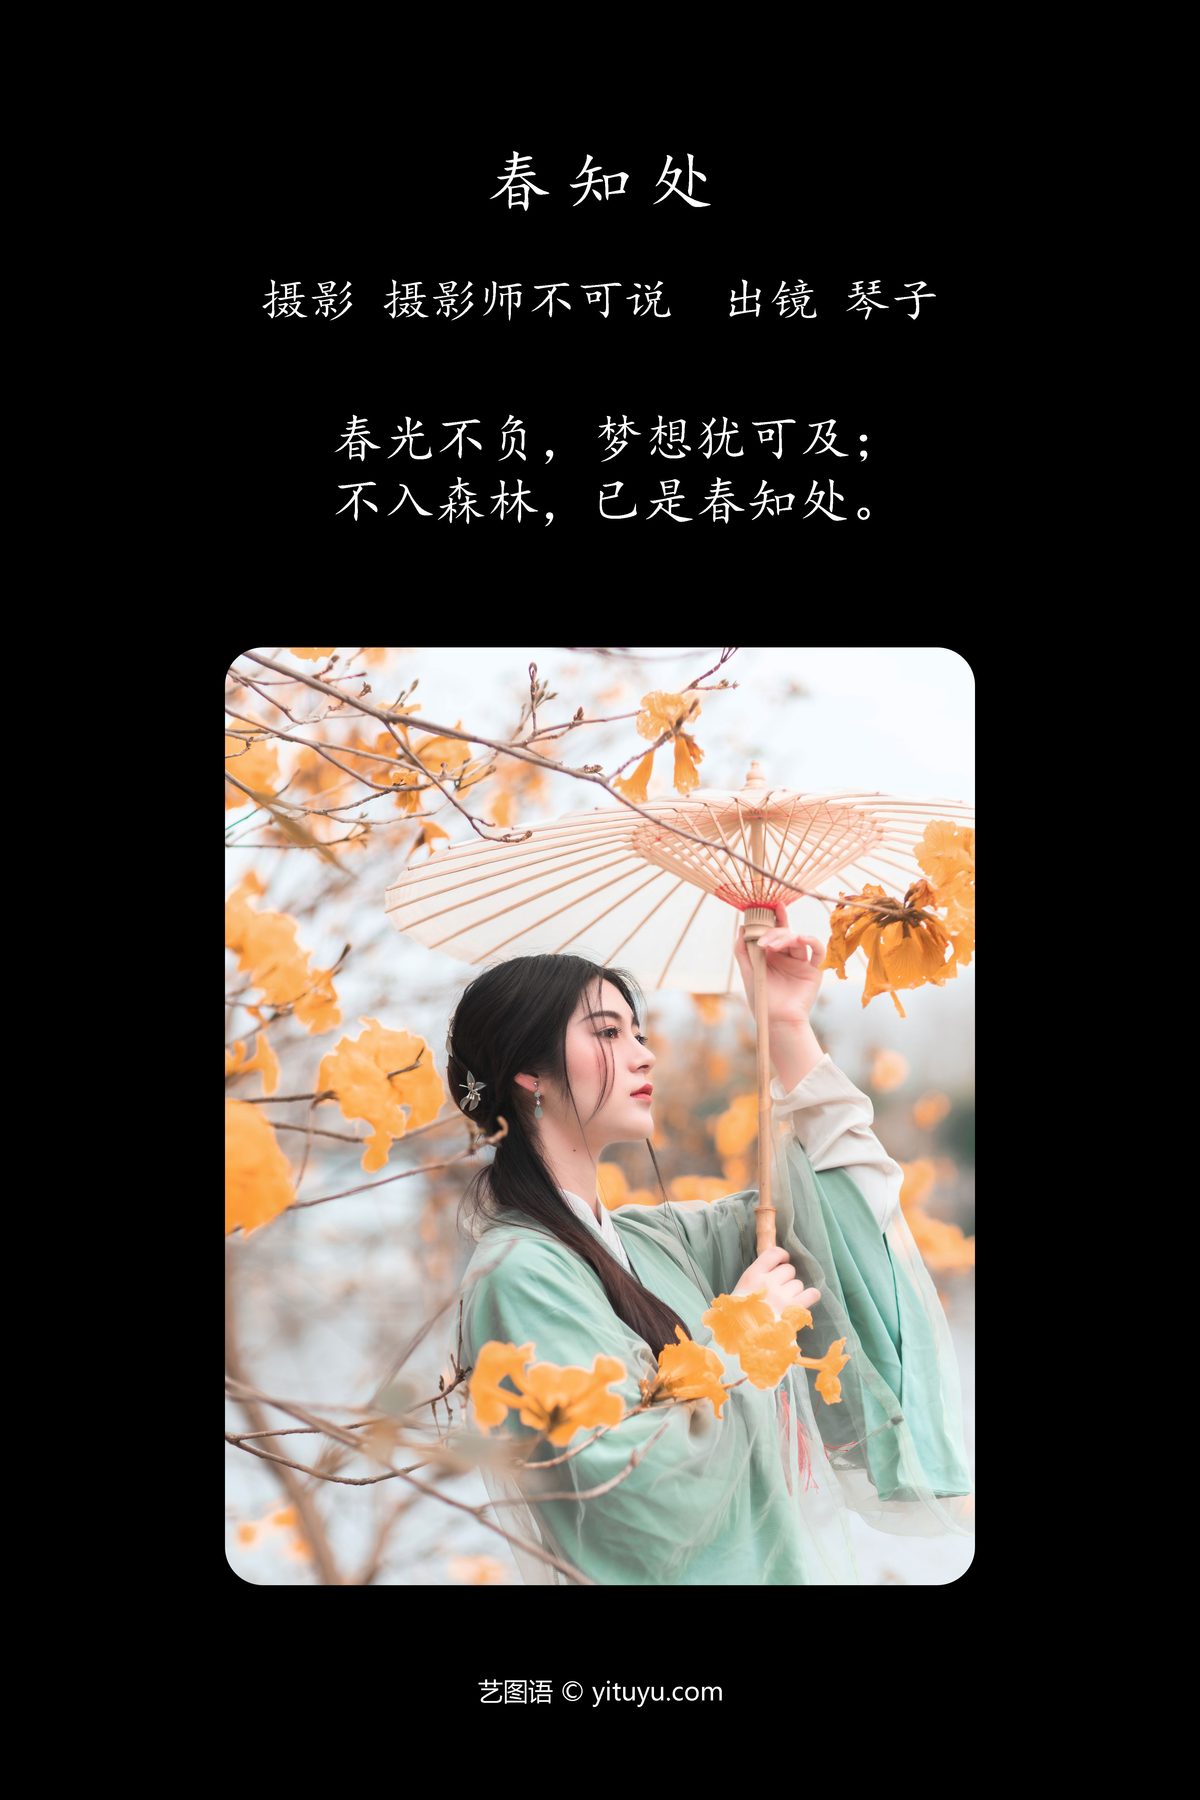 YiTuYu艺图语 Vol 4324 Qin Ko 0002 2016708100.jpg